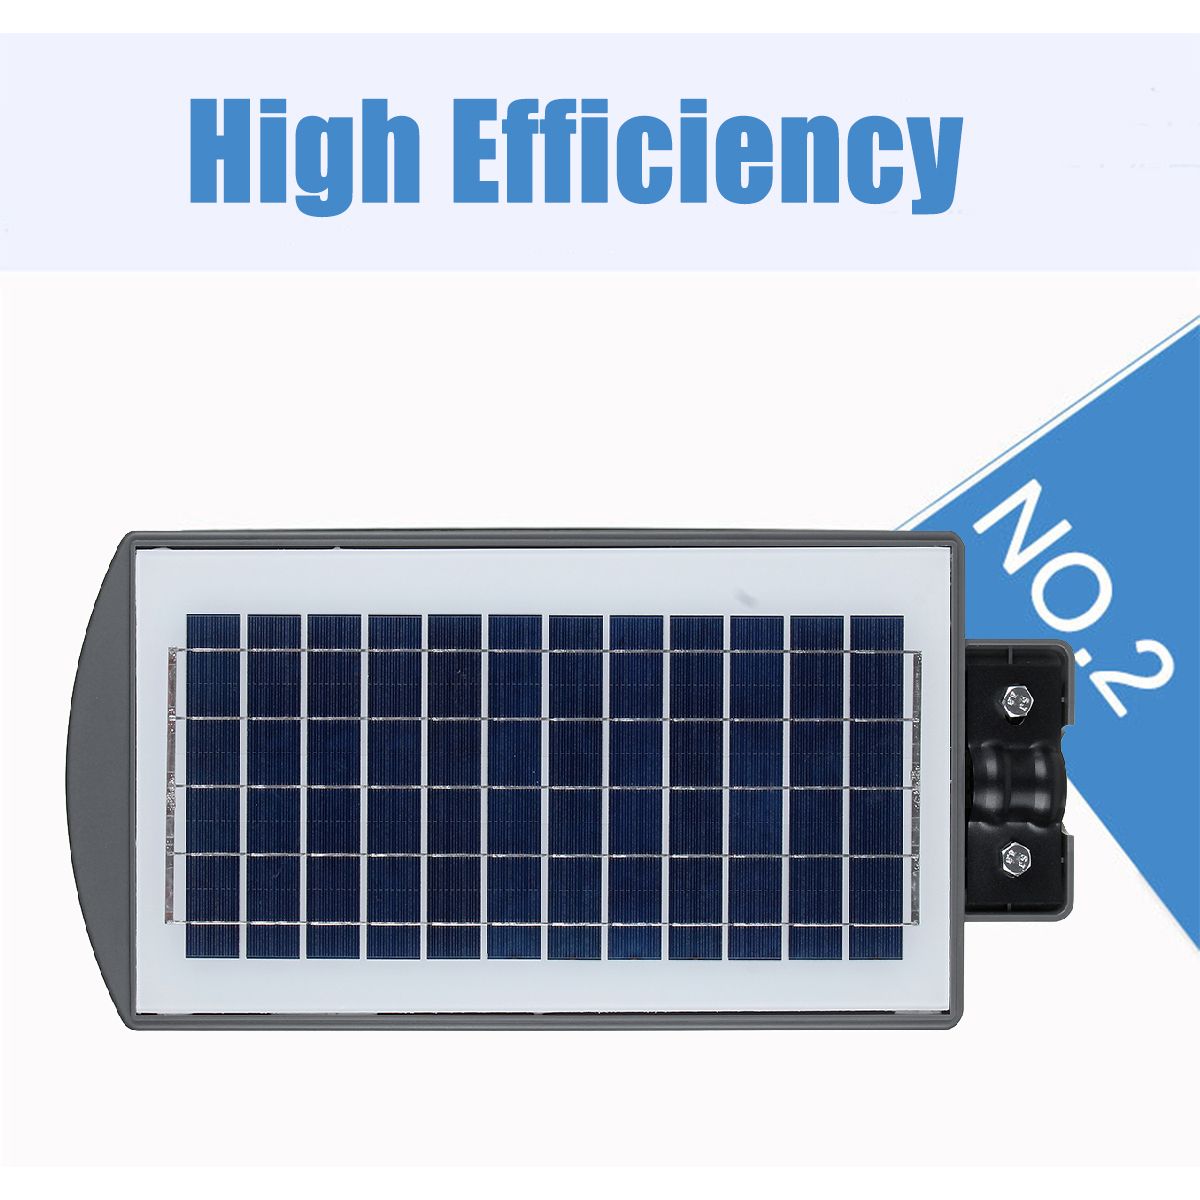 Solar-Powered-117234351-LED-Wall-Street-Light-PIR-Motion-Lamp-Garden-Road-1605570